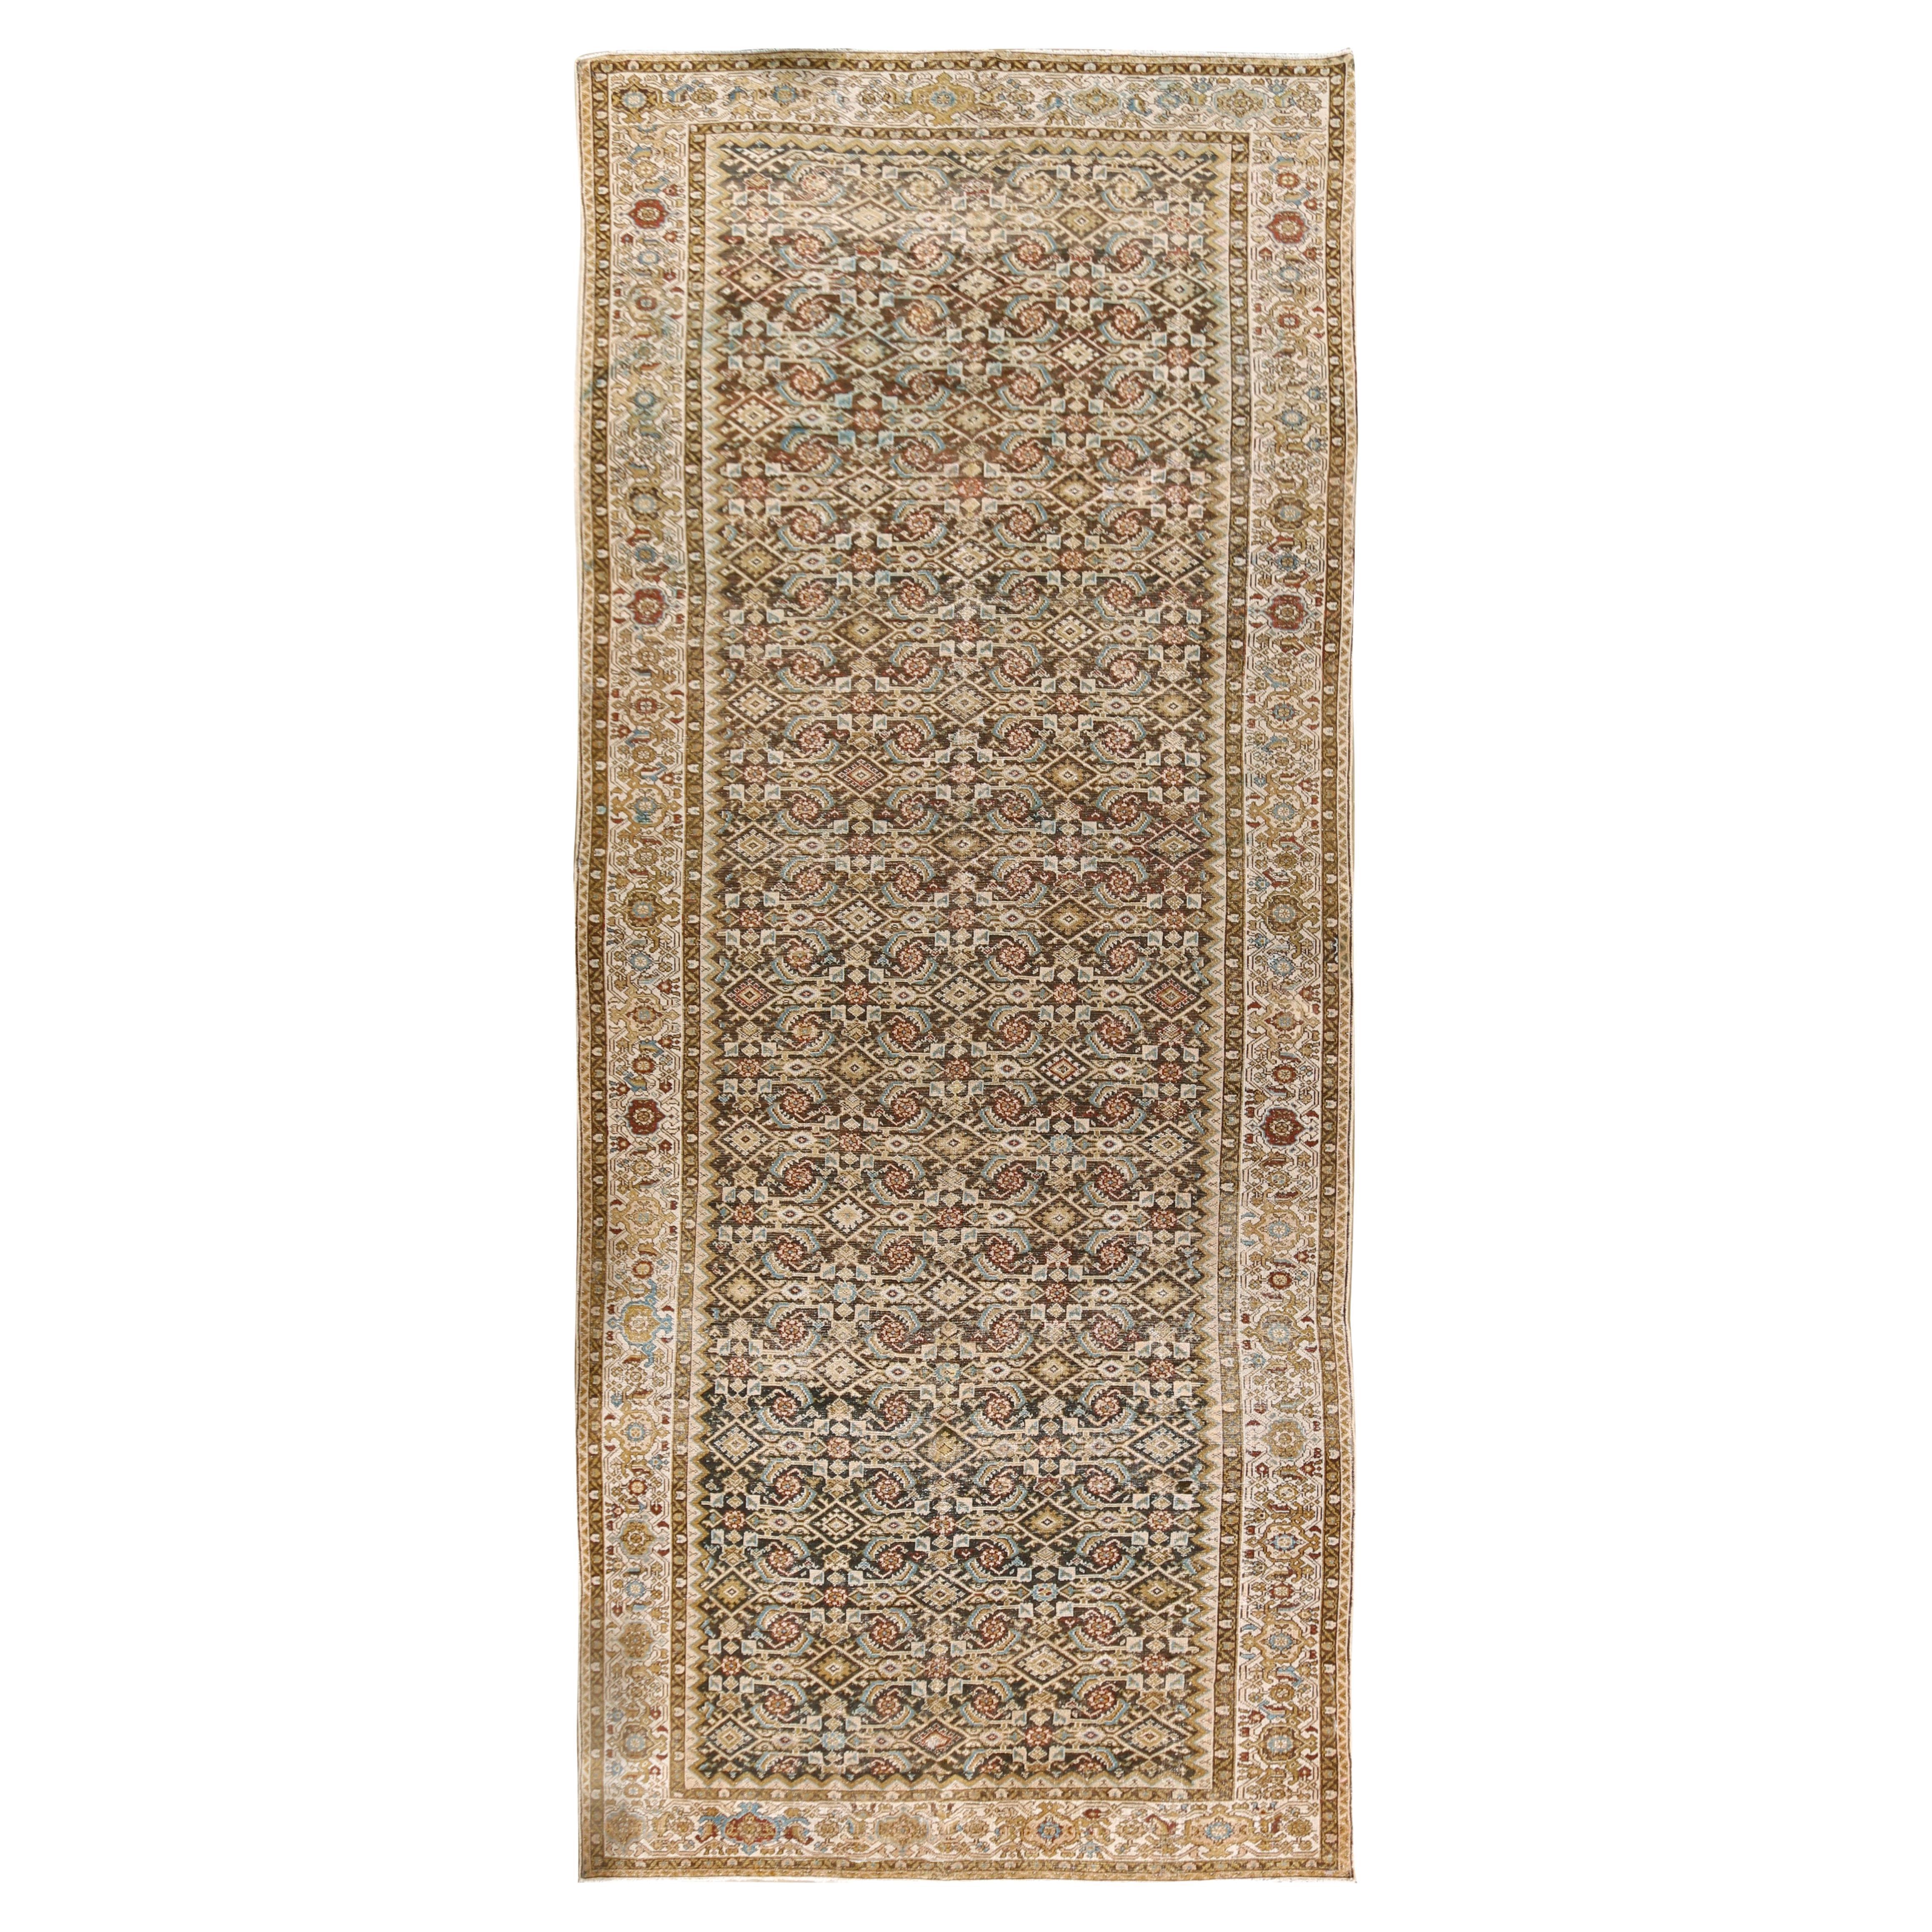 Antique Persian Malayer Corridor Carpet Rug, 7'1 x 17'11